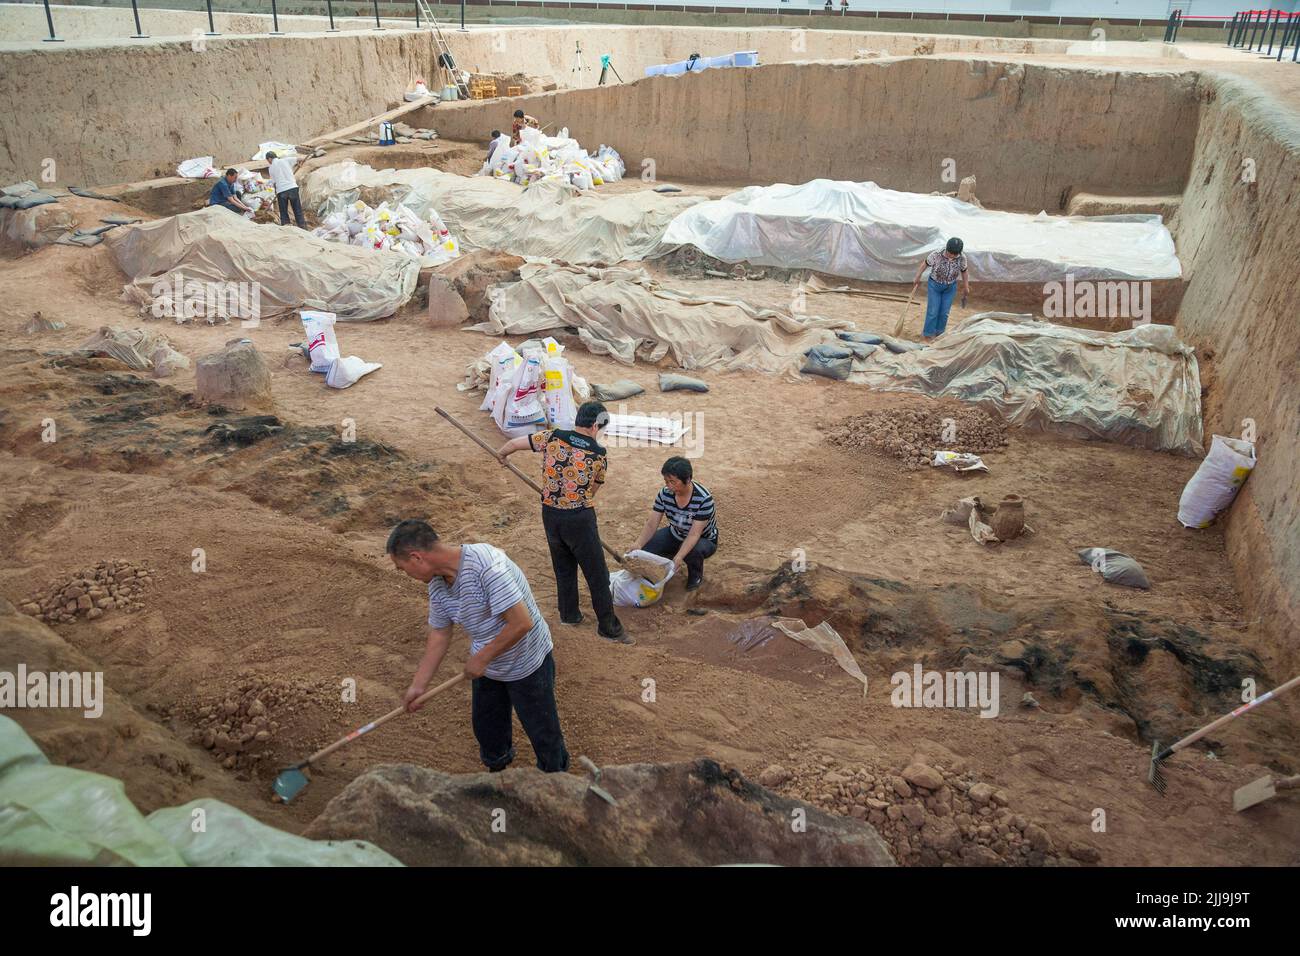 Fouilles archéologiques. Les archéologues retirent soigneusement les débris autour des objets enterrés découverts dans la fosse 1 à l'excavation de l'armée de terre cuite, au musée du Mausolée de l'empereur Qinshihuang à Xi'an, en Chine. PRC. (125). Banque D'Images